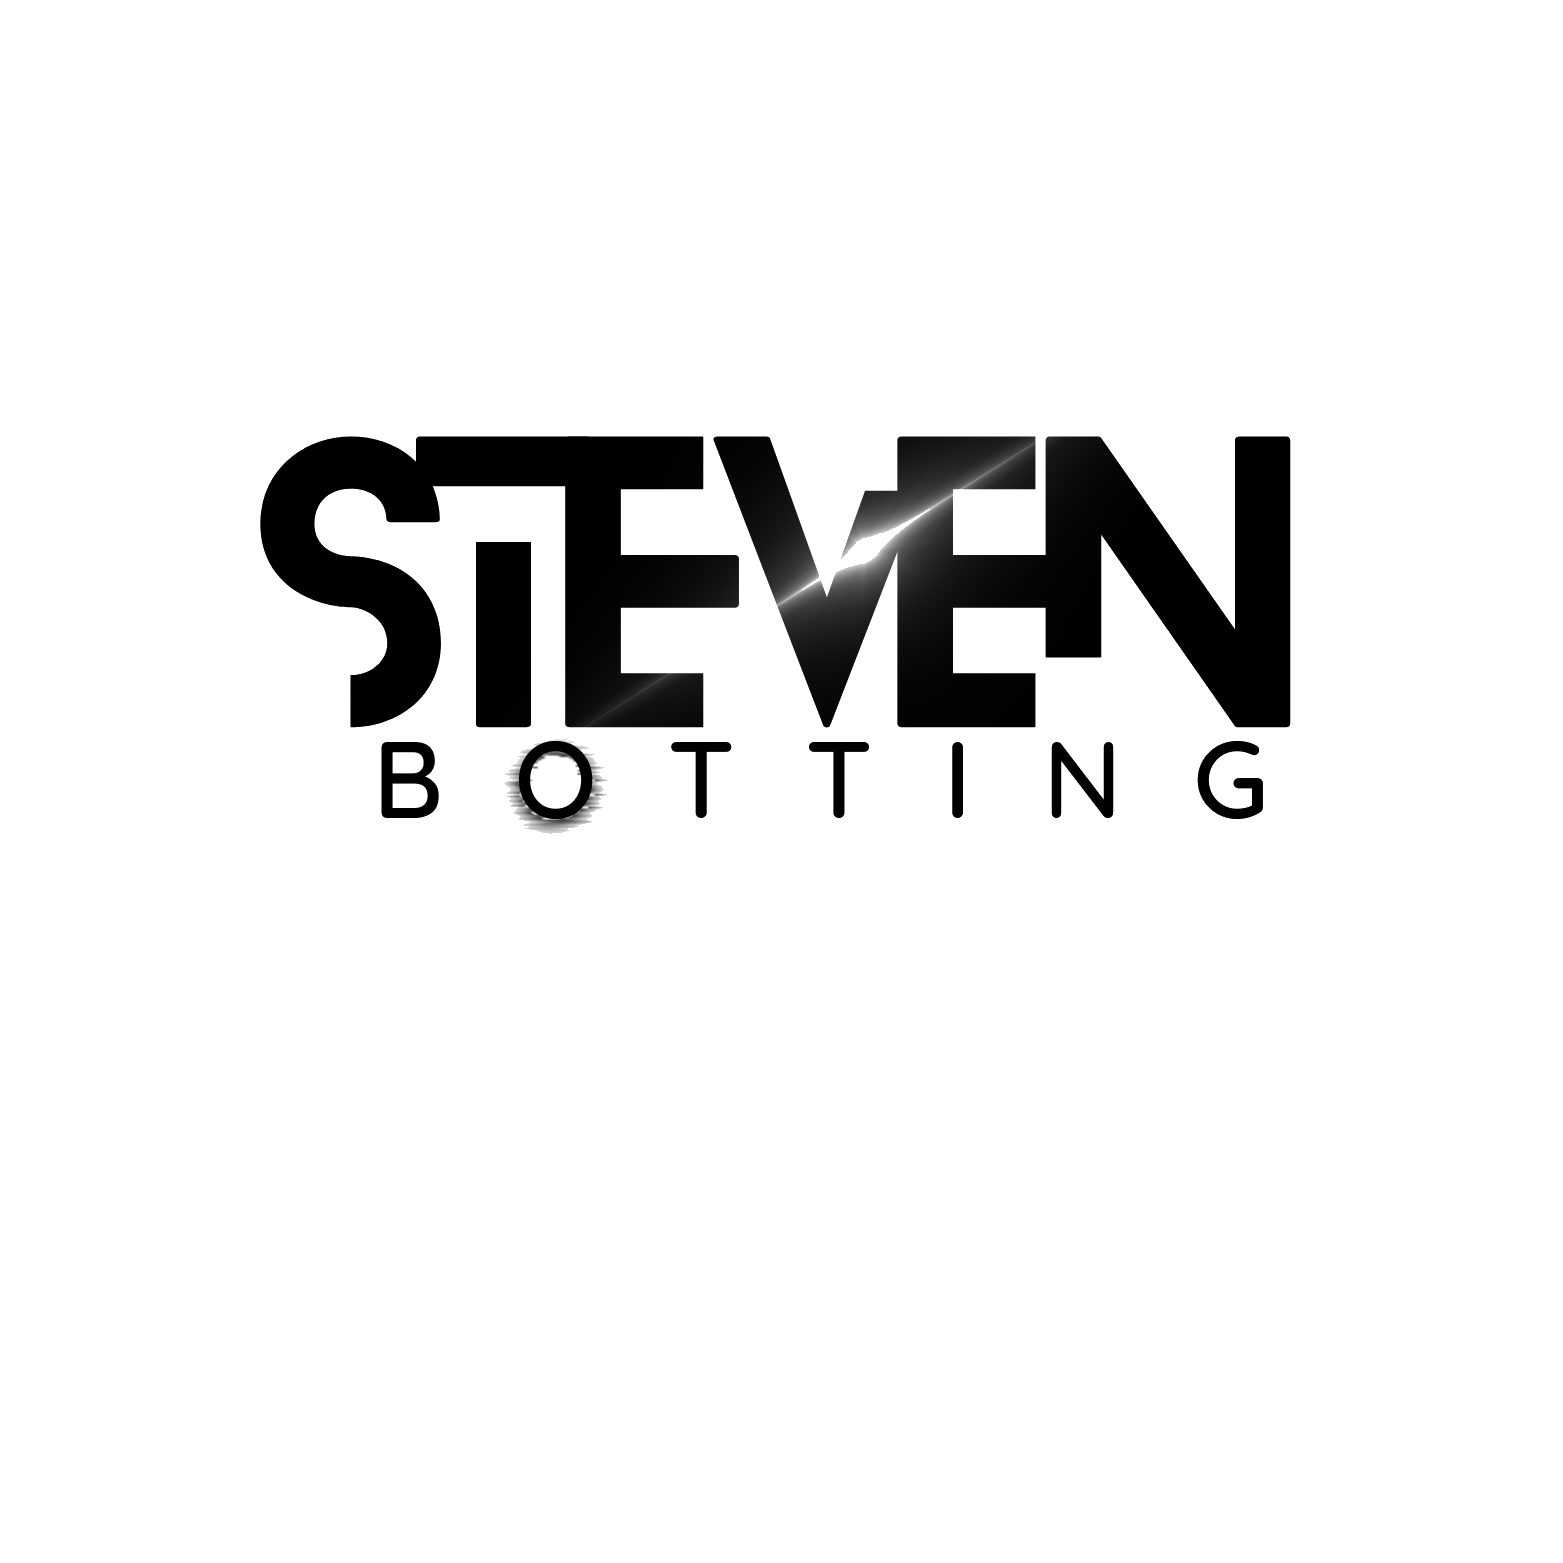 Steven Botting – Electronic Music Composer